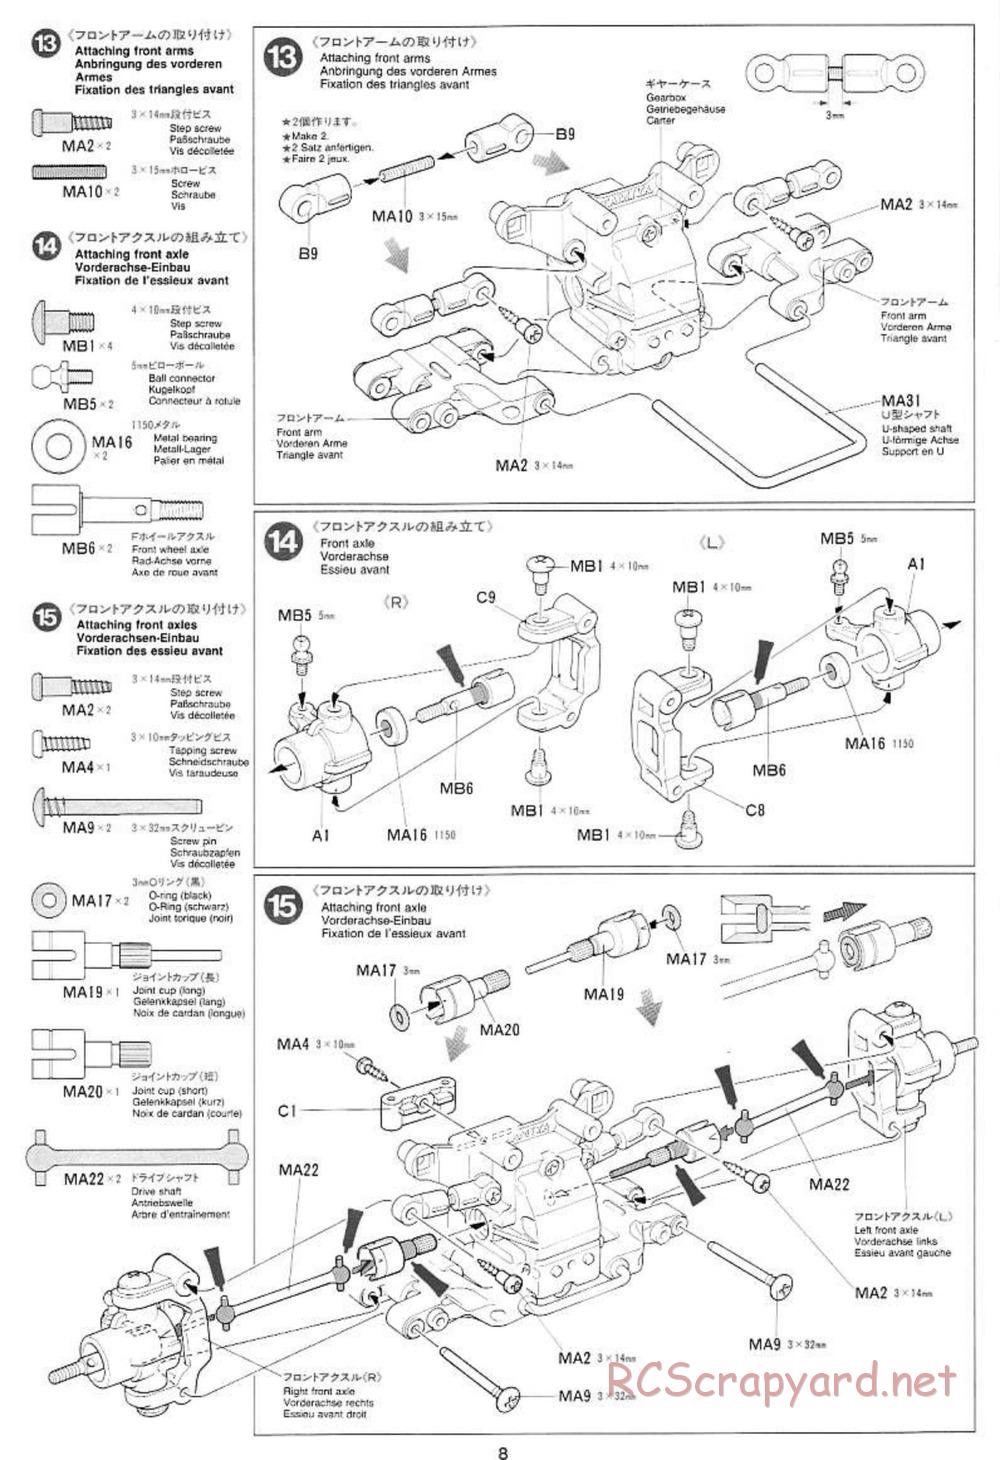 Tamiya - Mercedes CLK GTR Team Sportswear - TG10 Mk.1 Chassis - Manual - Page 8